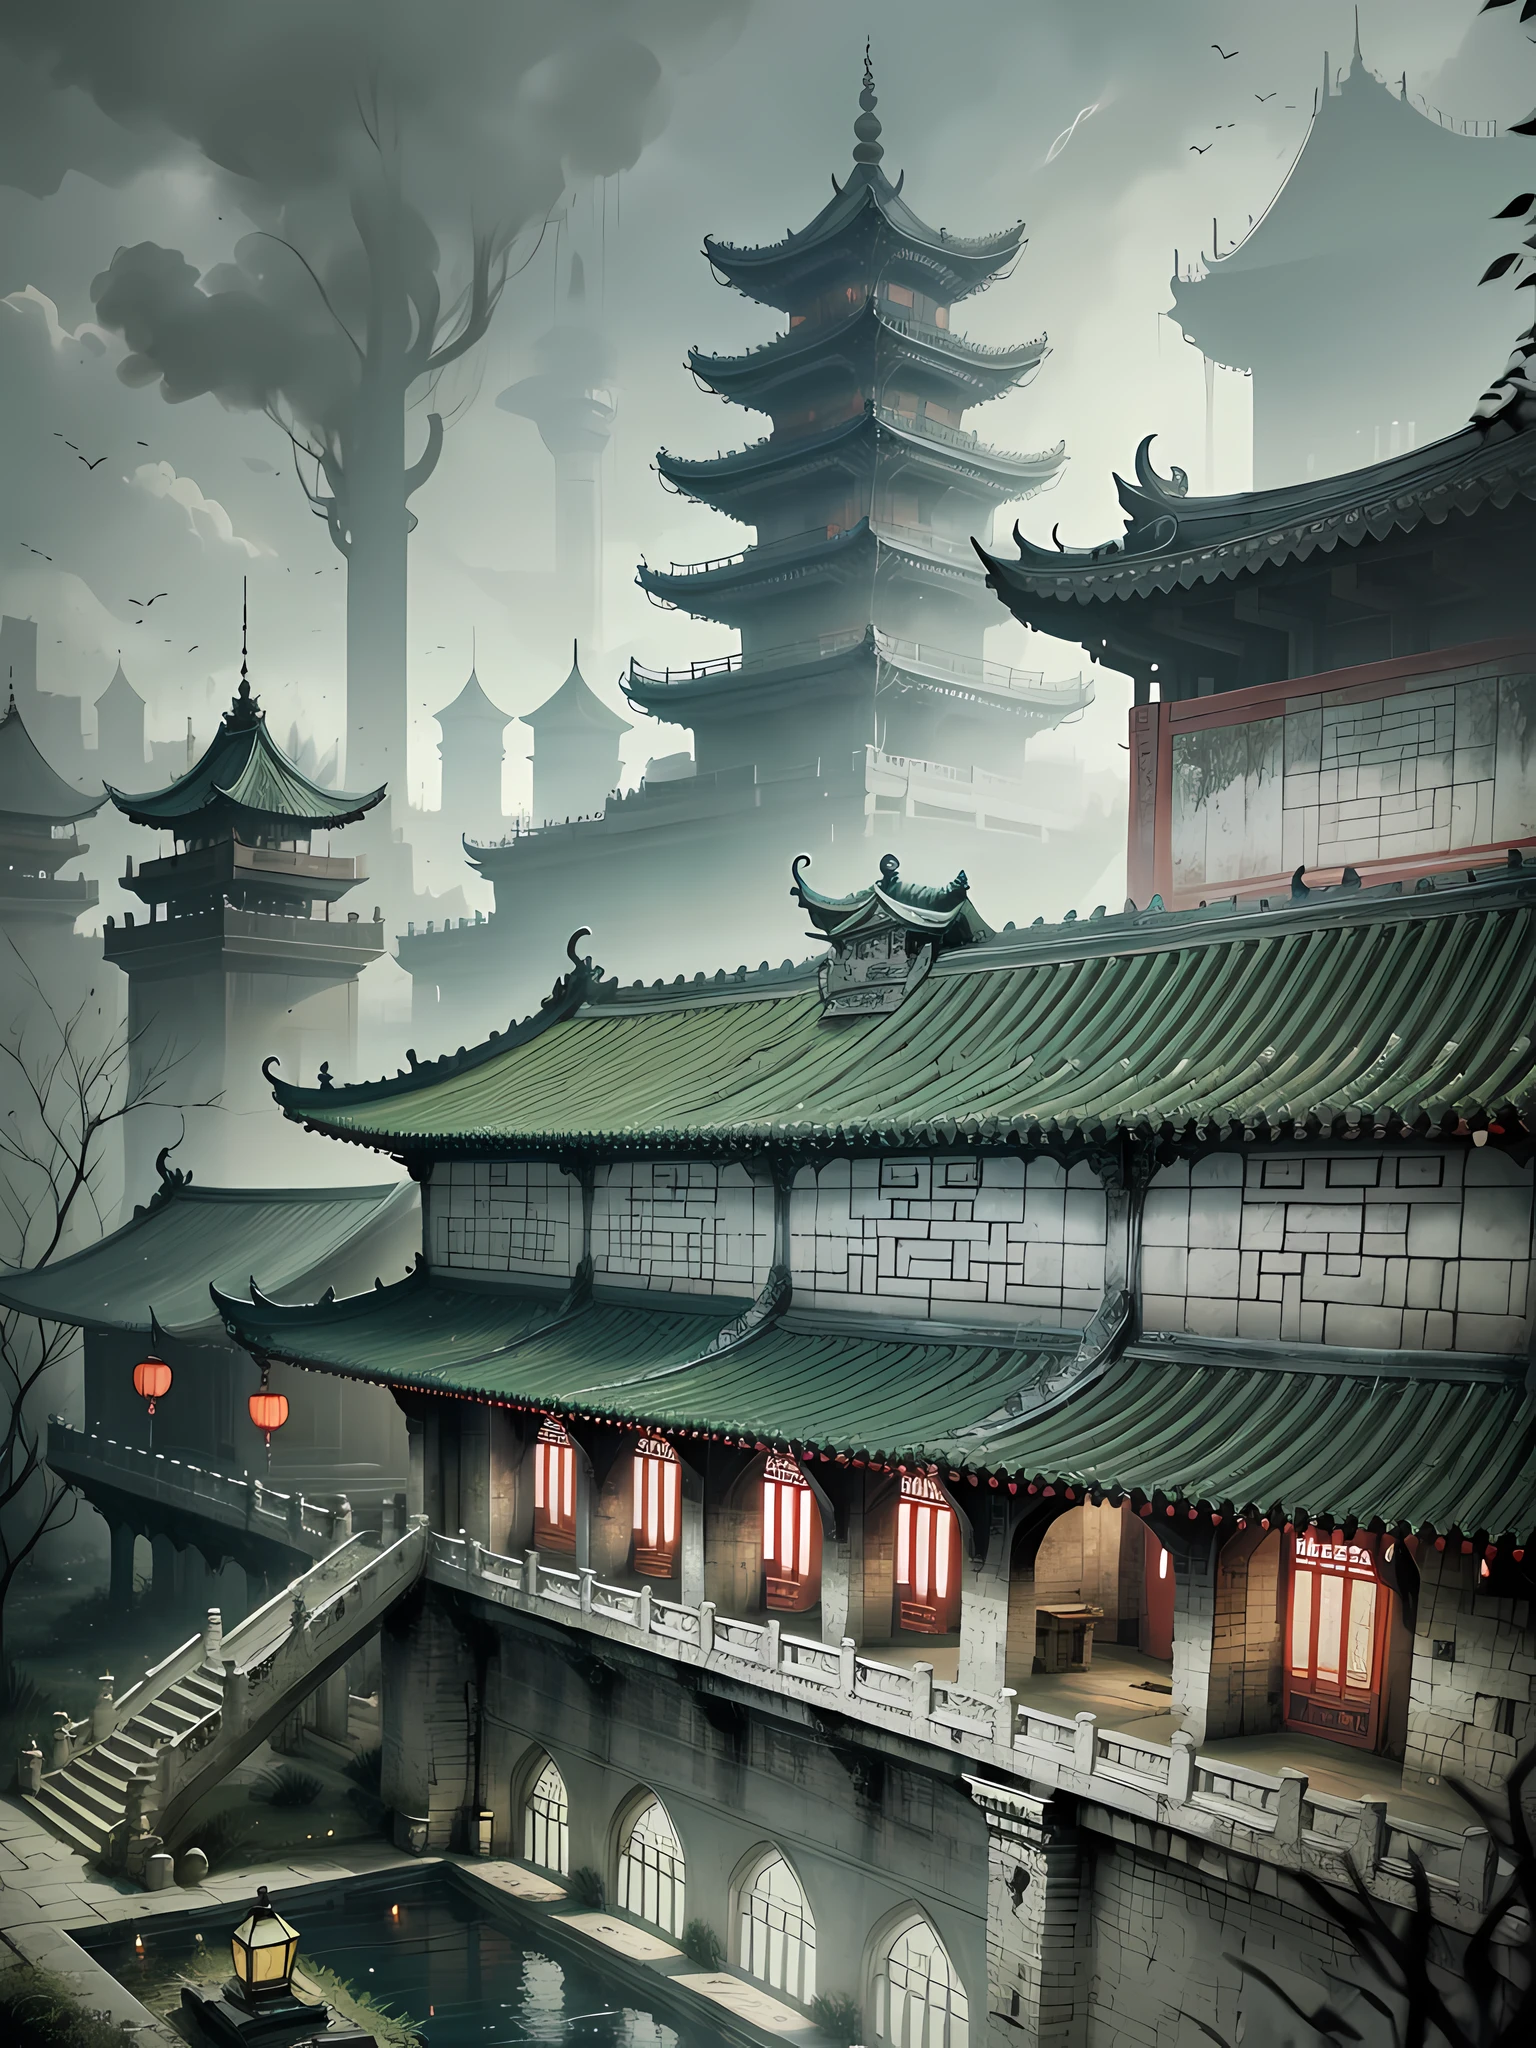 Le palais souterrain plein de revenants et de griefs, le palais entouré de lumière verte, sombre, froid, humide, Style chinois --v6